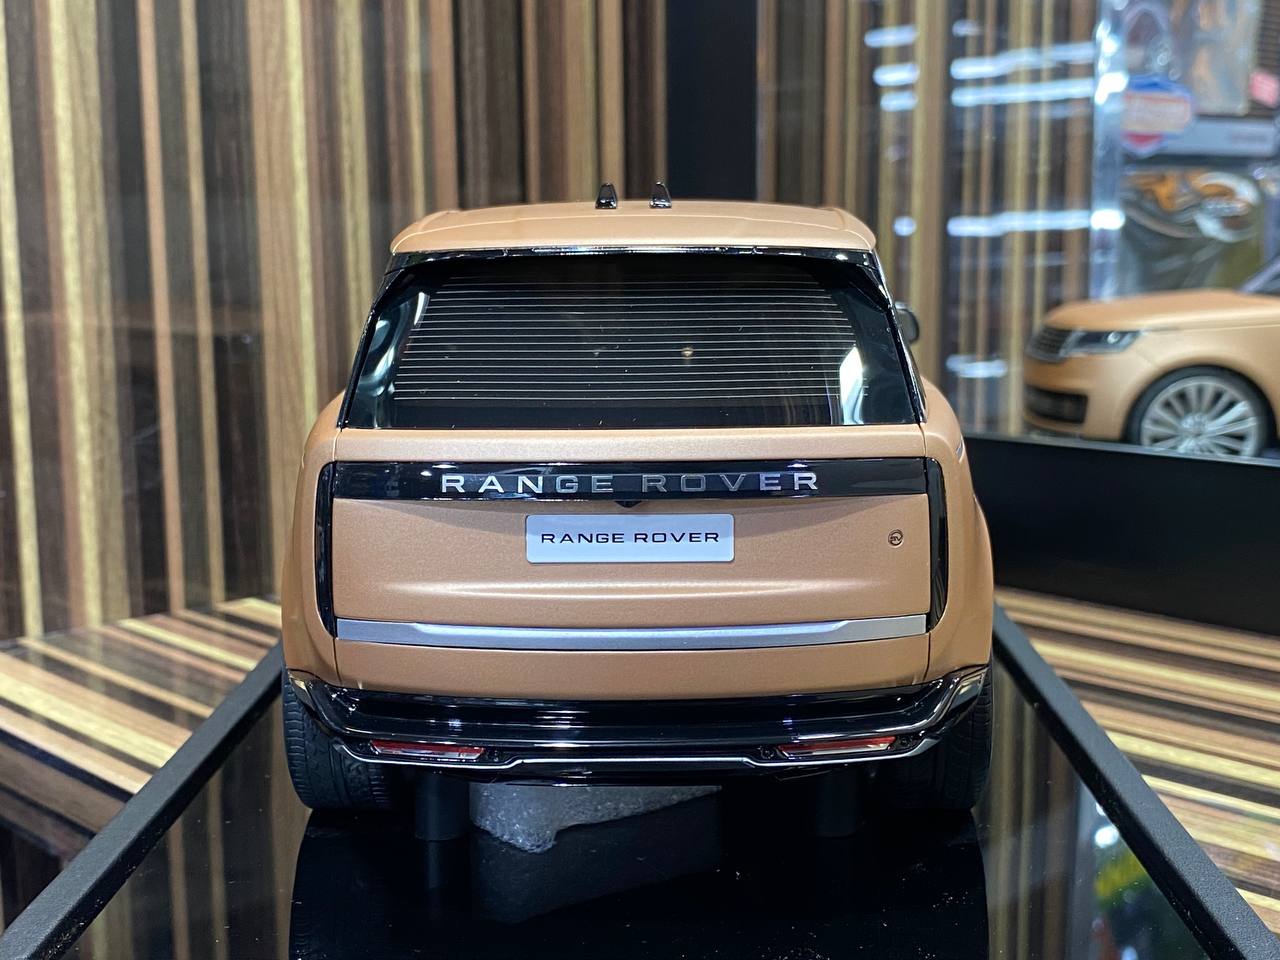 1/18 Resin Land Rover Range Rover Sunset Gold Matt by MotorHelix|Sold in Dturman.com Dubai UAE.